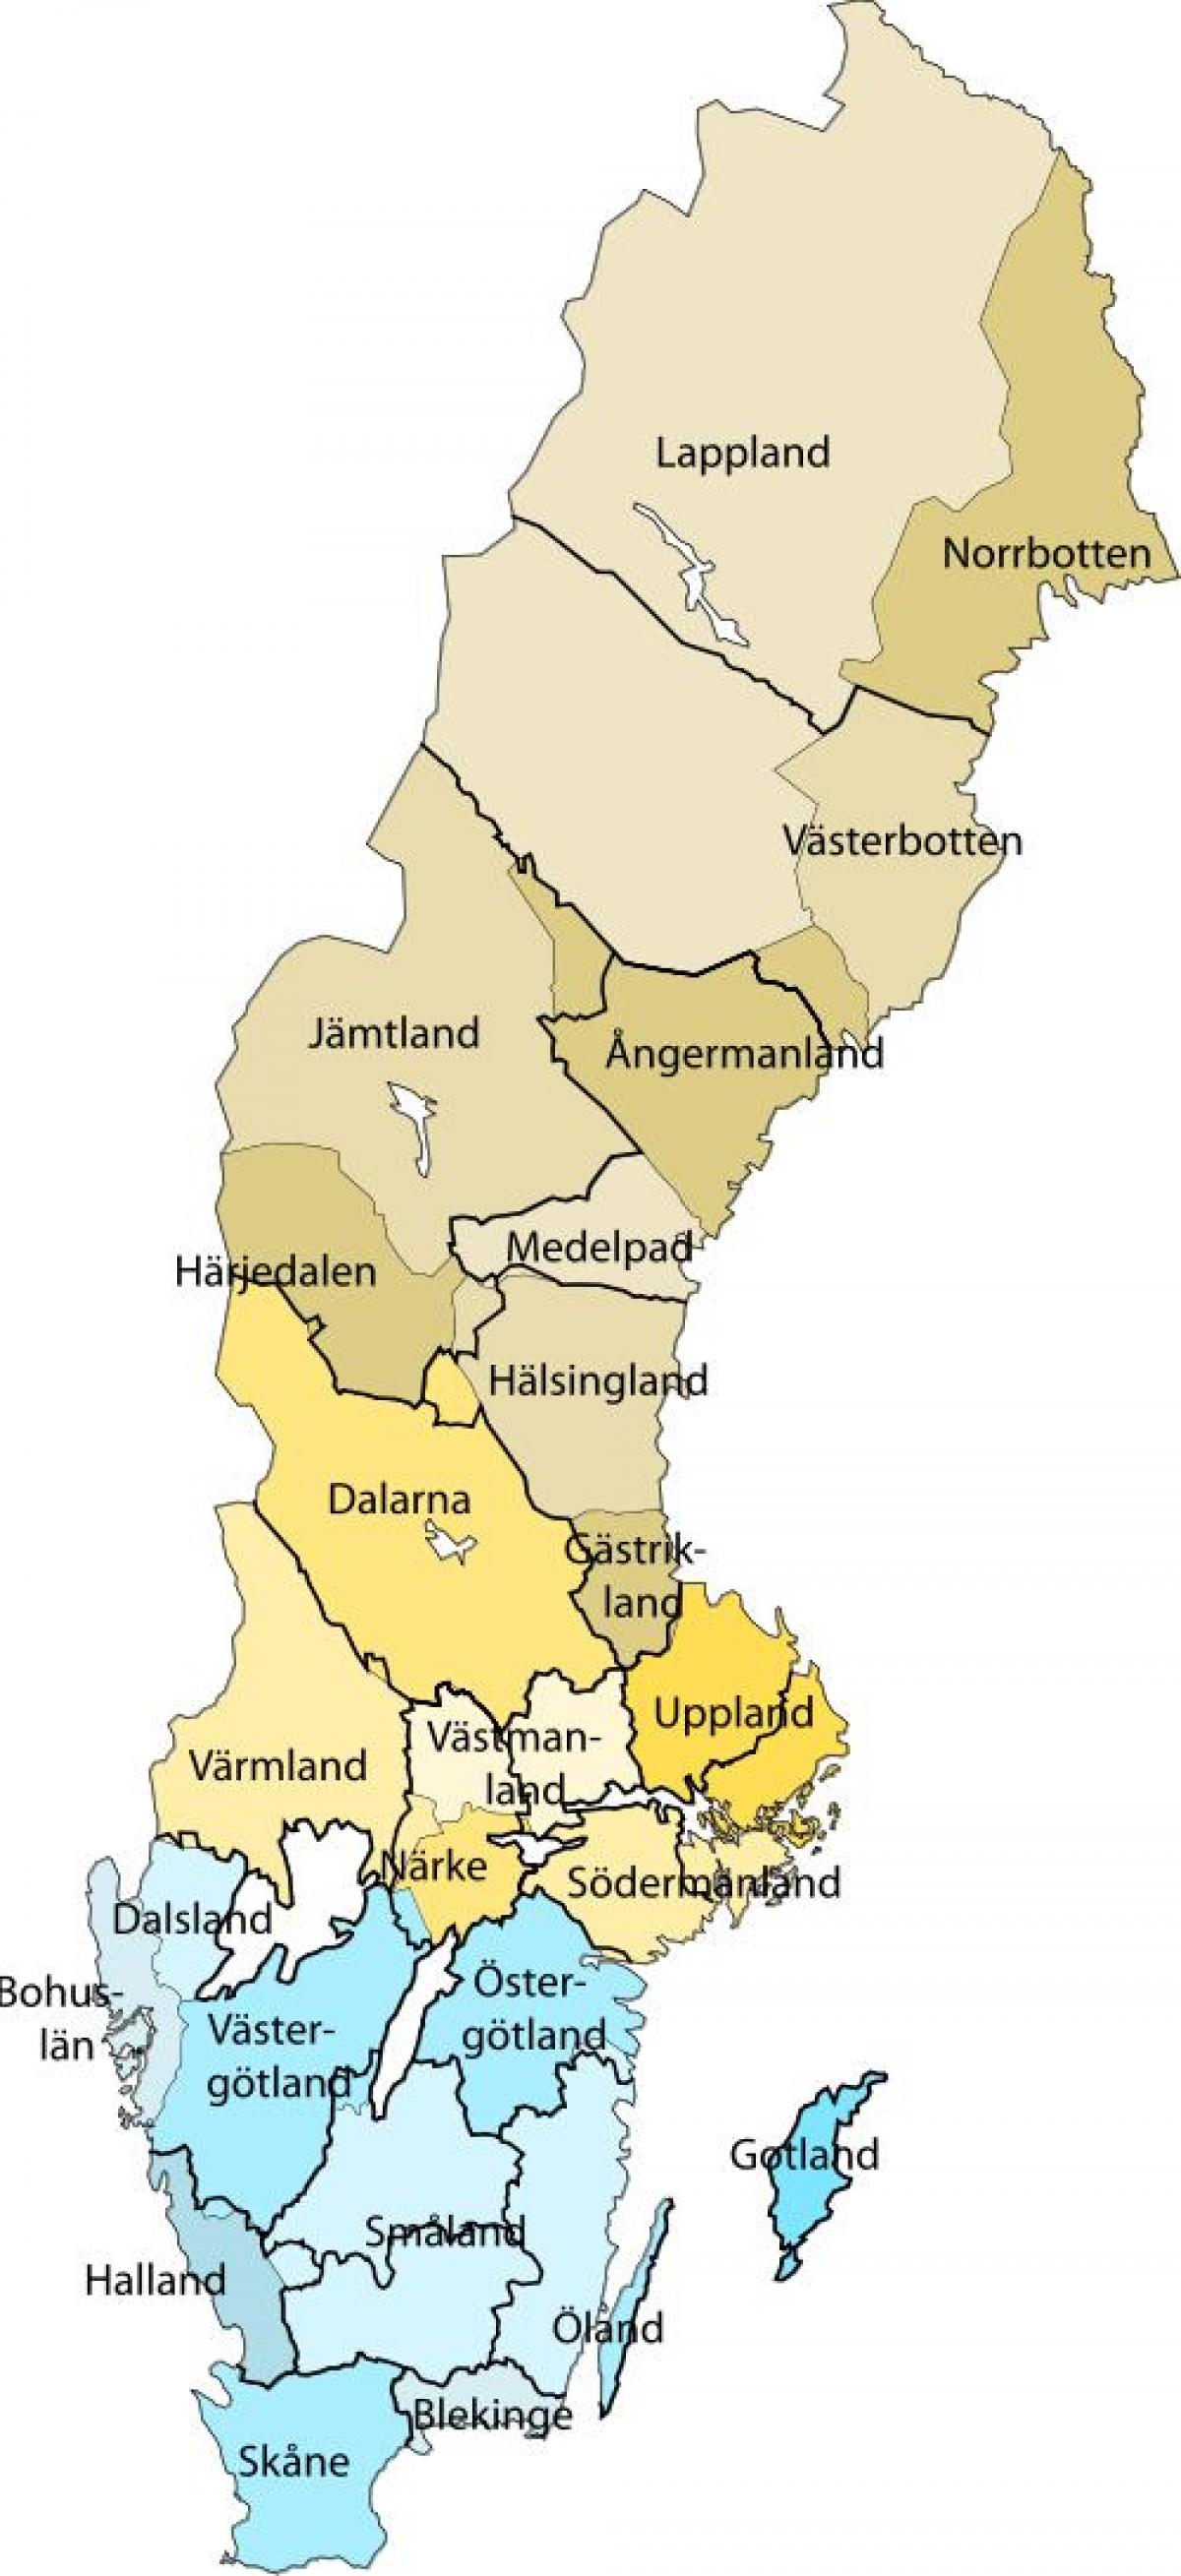 Mappa delle aree della Svezia